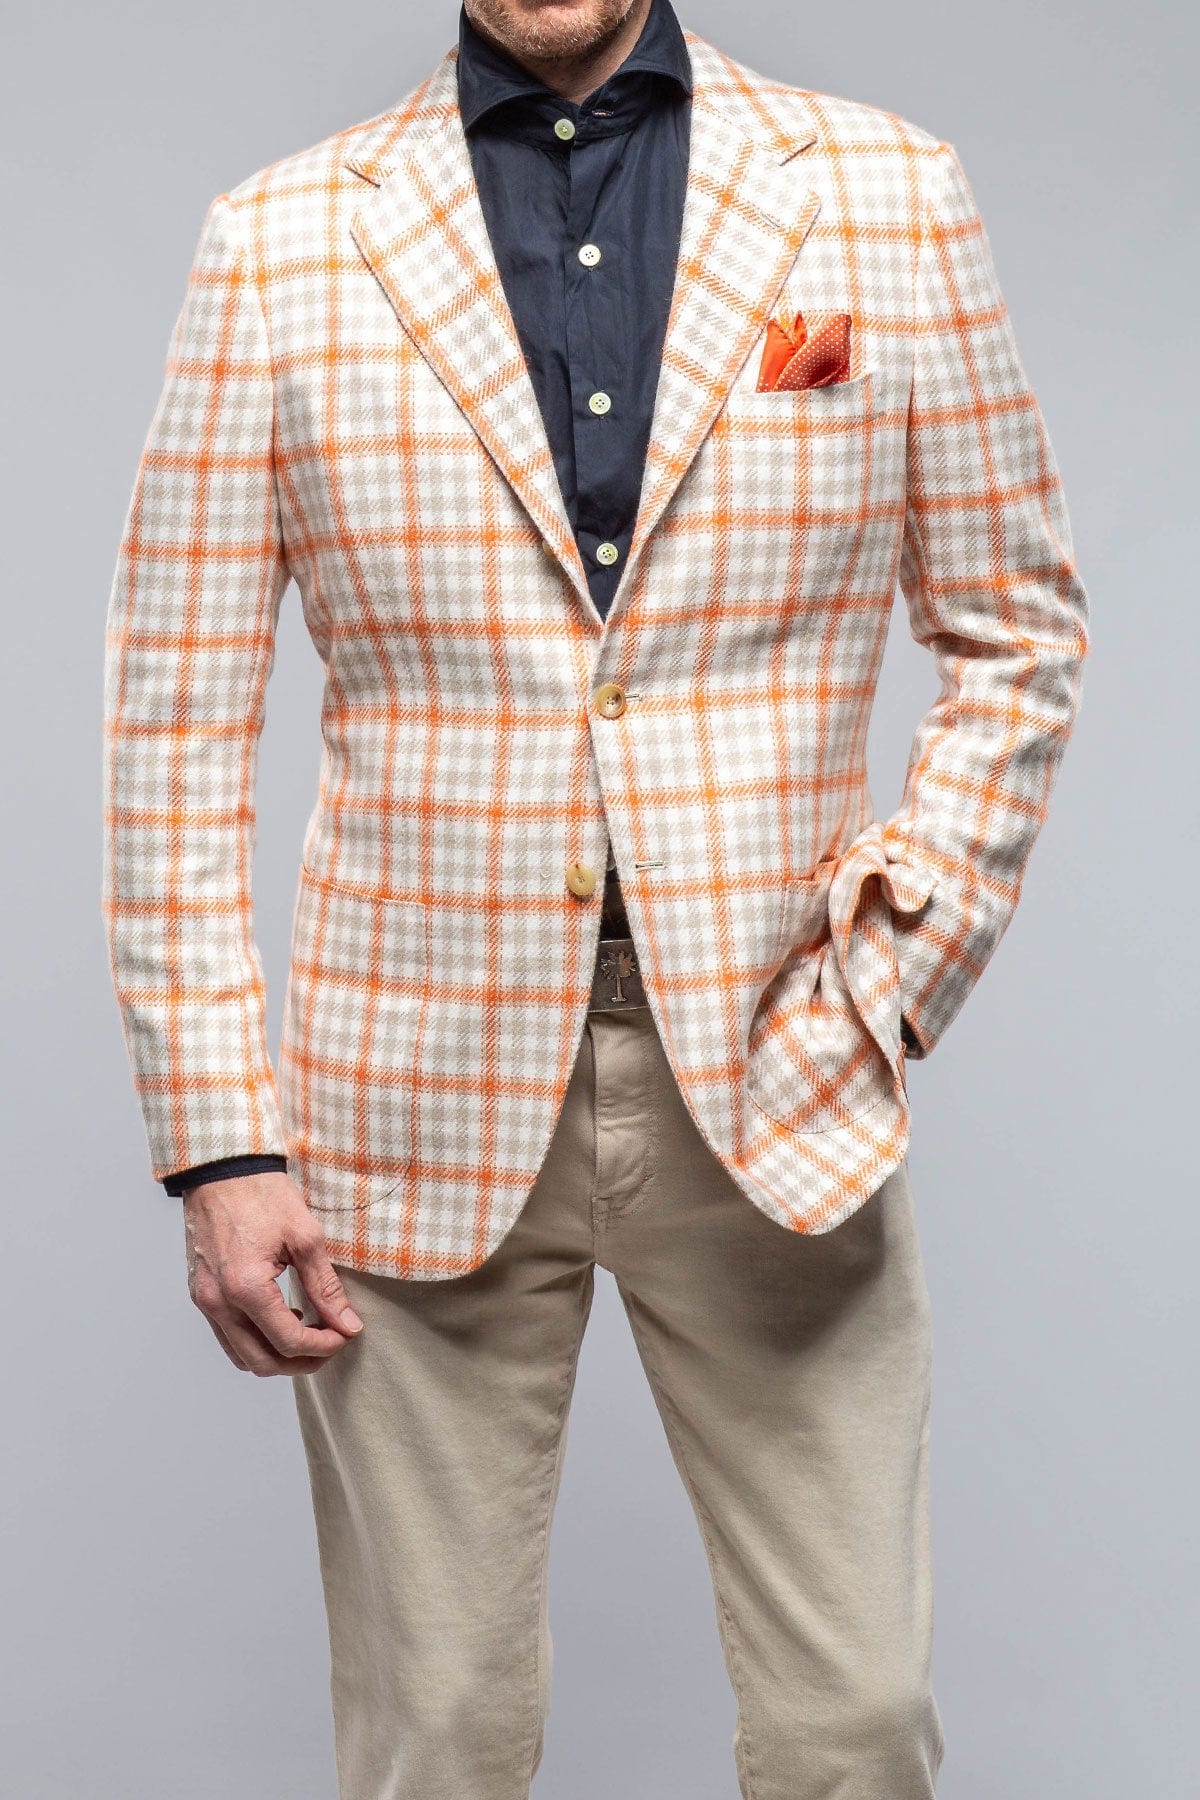 Eagan Cashmere Sport Coat in Cream and Orange - AXEL'S